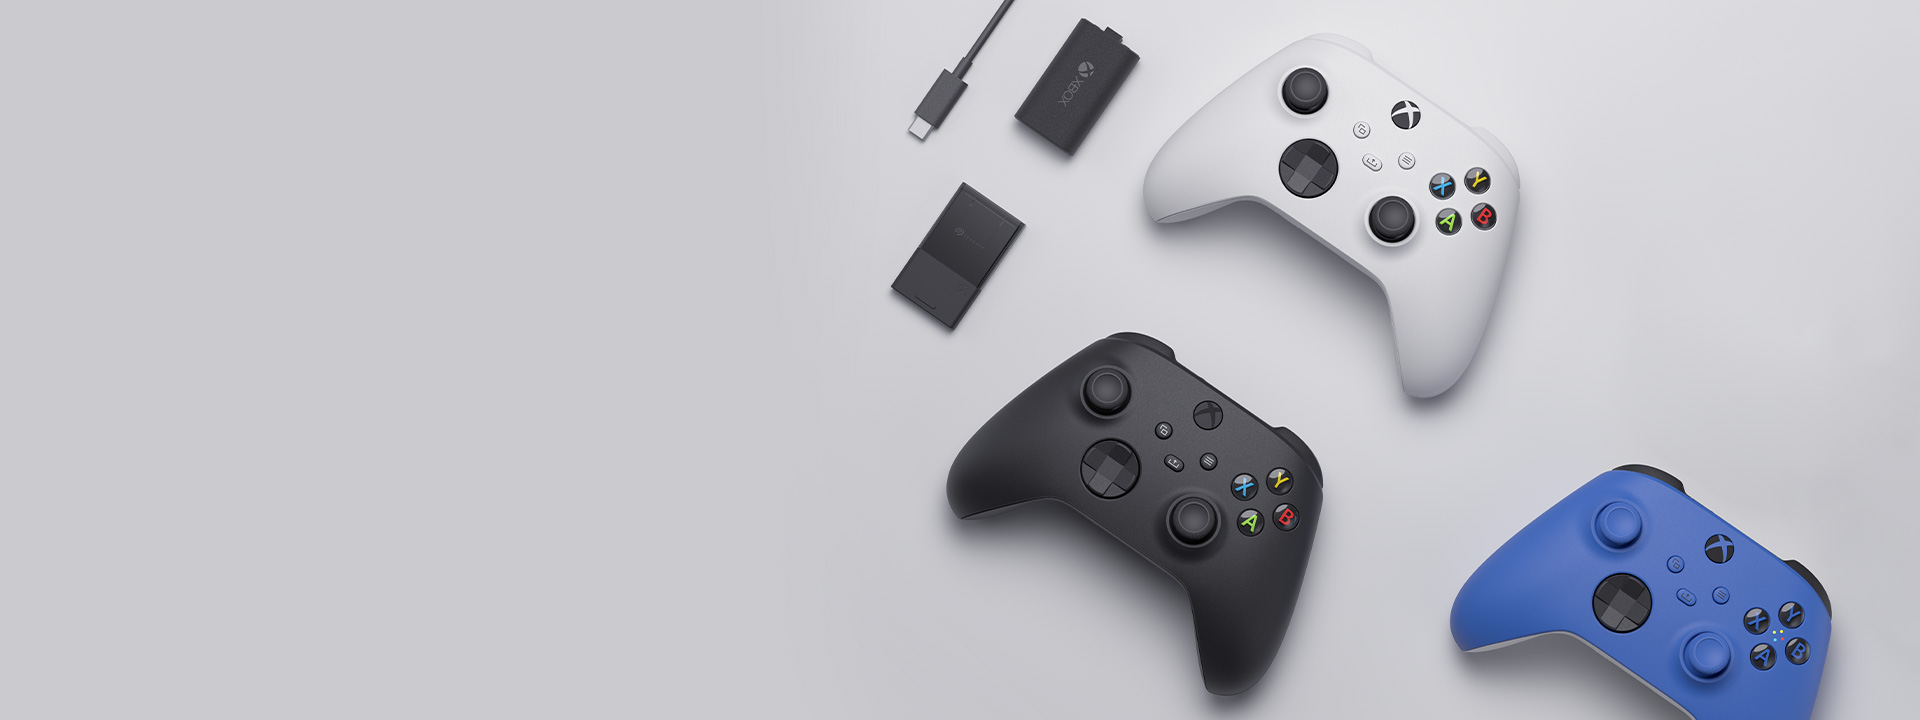 Varios accesorios Xbox, incluido el mando inalámbrico de Xbox, el kit Play and Charge, y la tarjeta de expansión de almacenamiento Seagate para Xbox Series X|S aparecen unos junto a otros.